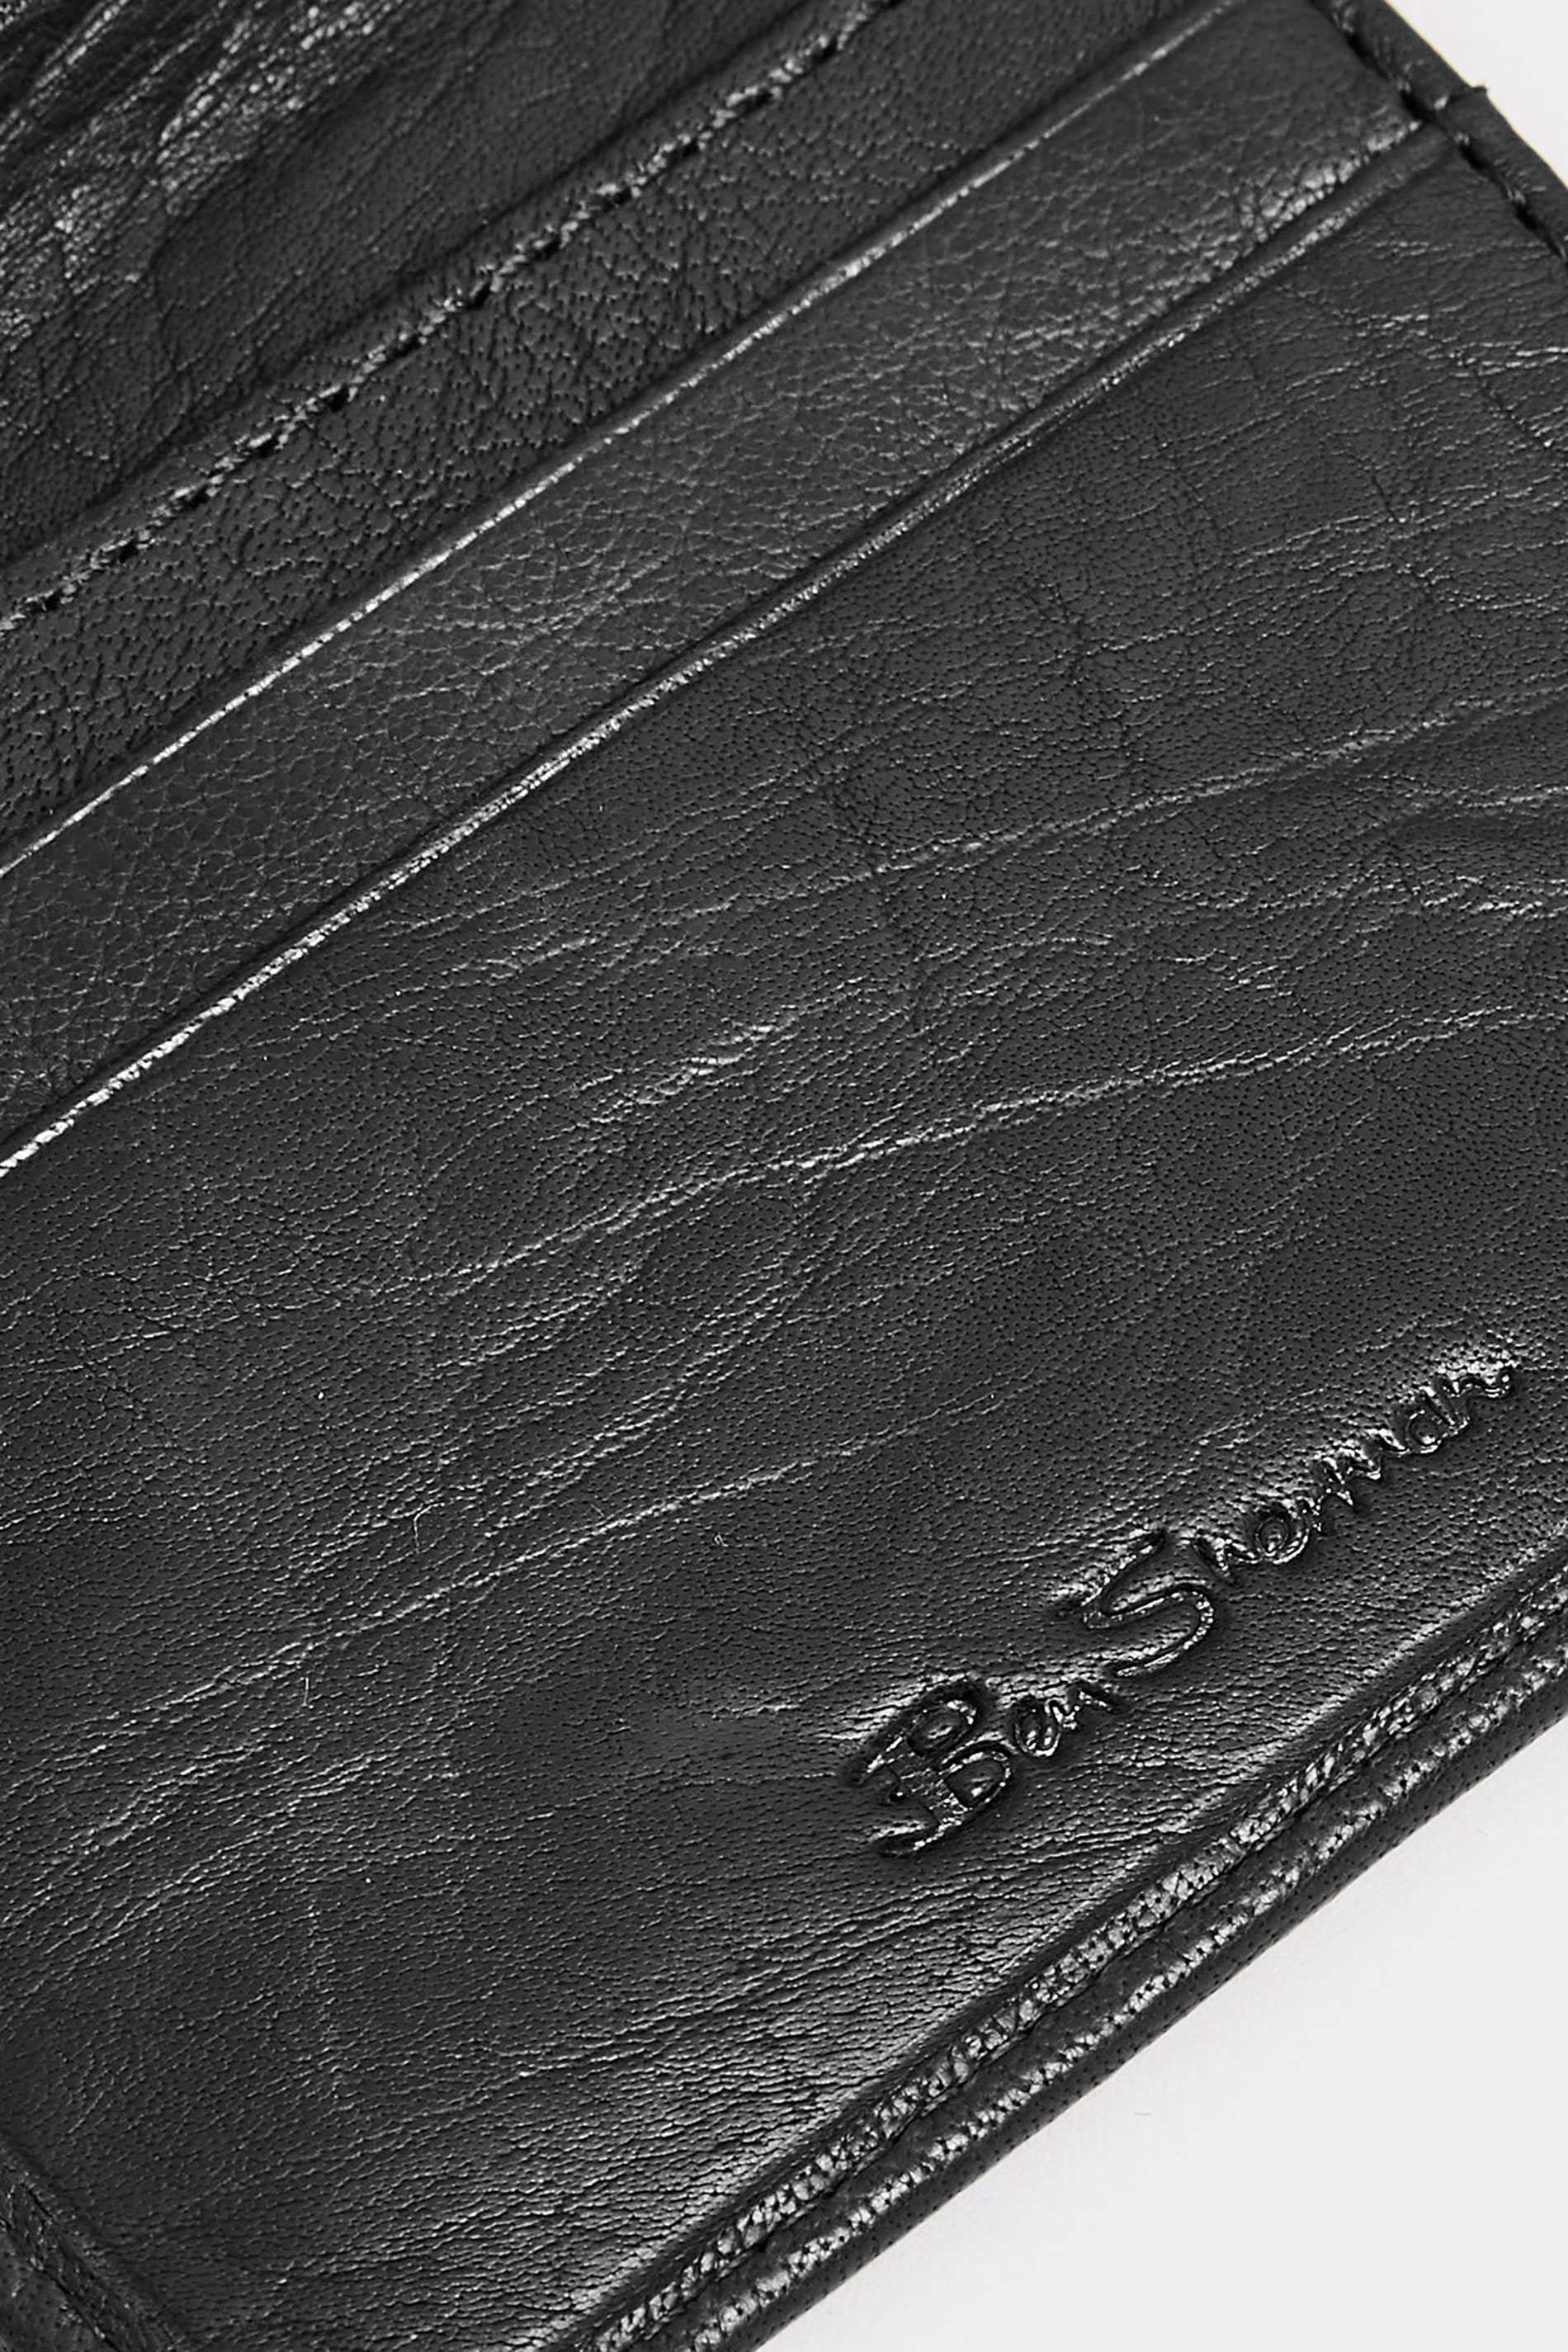 BEN SHERMAN Black Leather 'Webbe' Slimfold Wallet | BadRhino 3